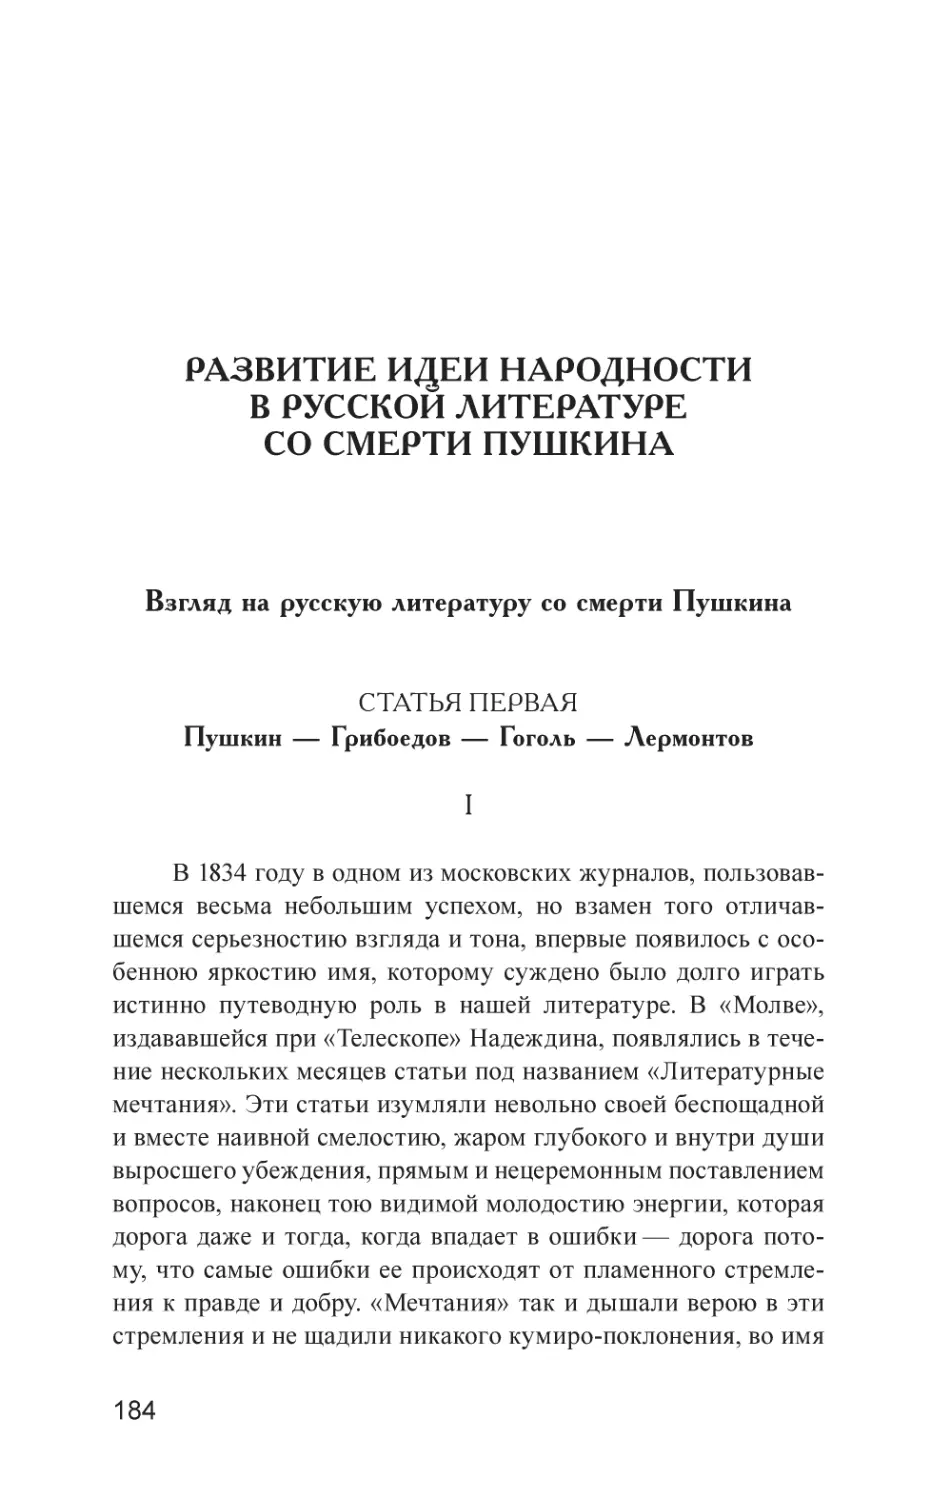 РАЗВИТИЕ ИДЕИ НАРОДНОСТИ В РУССКОЙ ЛИТЕРАТУРЕ СО СМЕРТИ ПУШКИНА
Взгляд на русскую литературу со смерти Пушкина